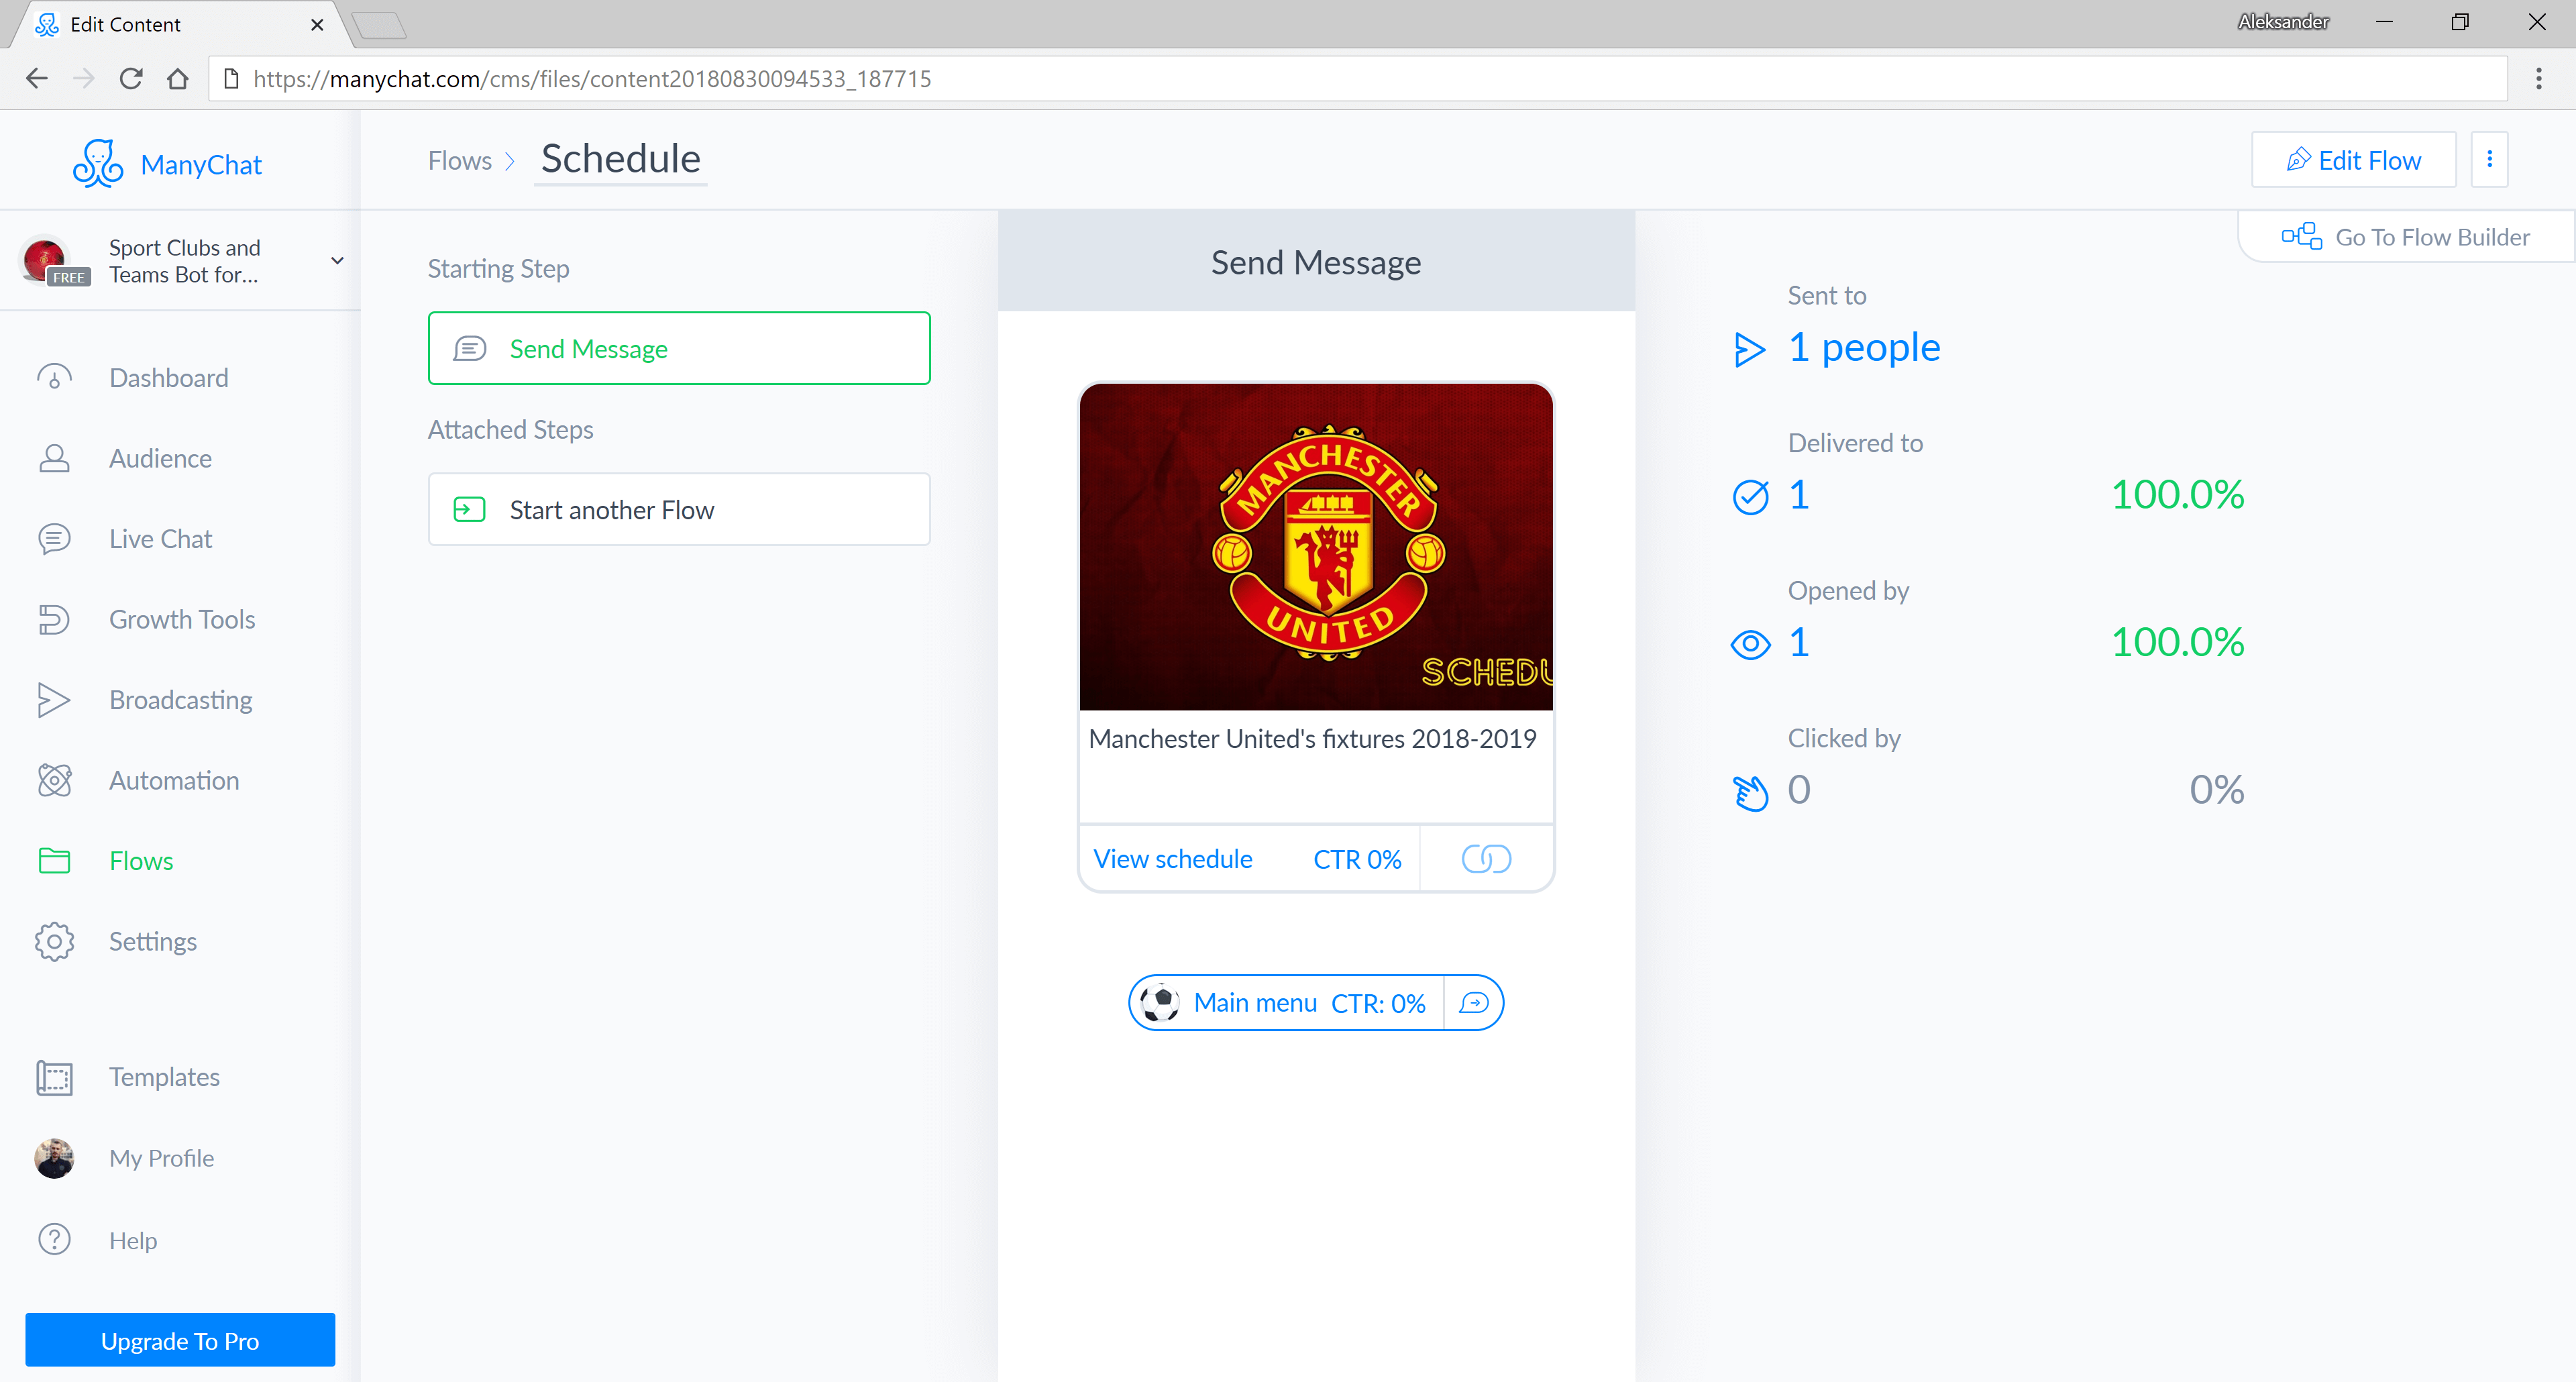 ManyChat flow editor screenshot for Modèle Facebook Bot Messenger pour les clubs et les équipes de sport